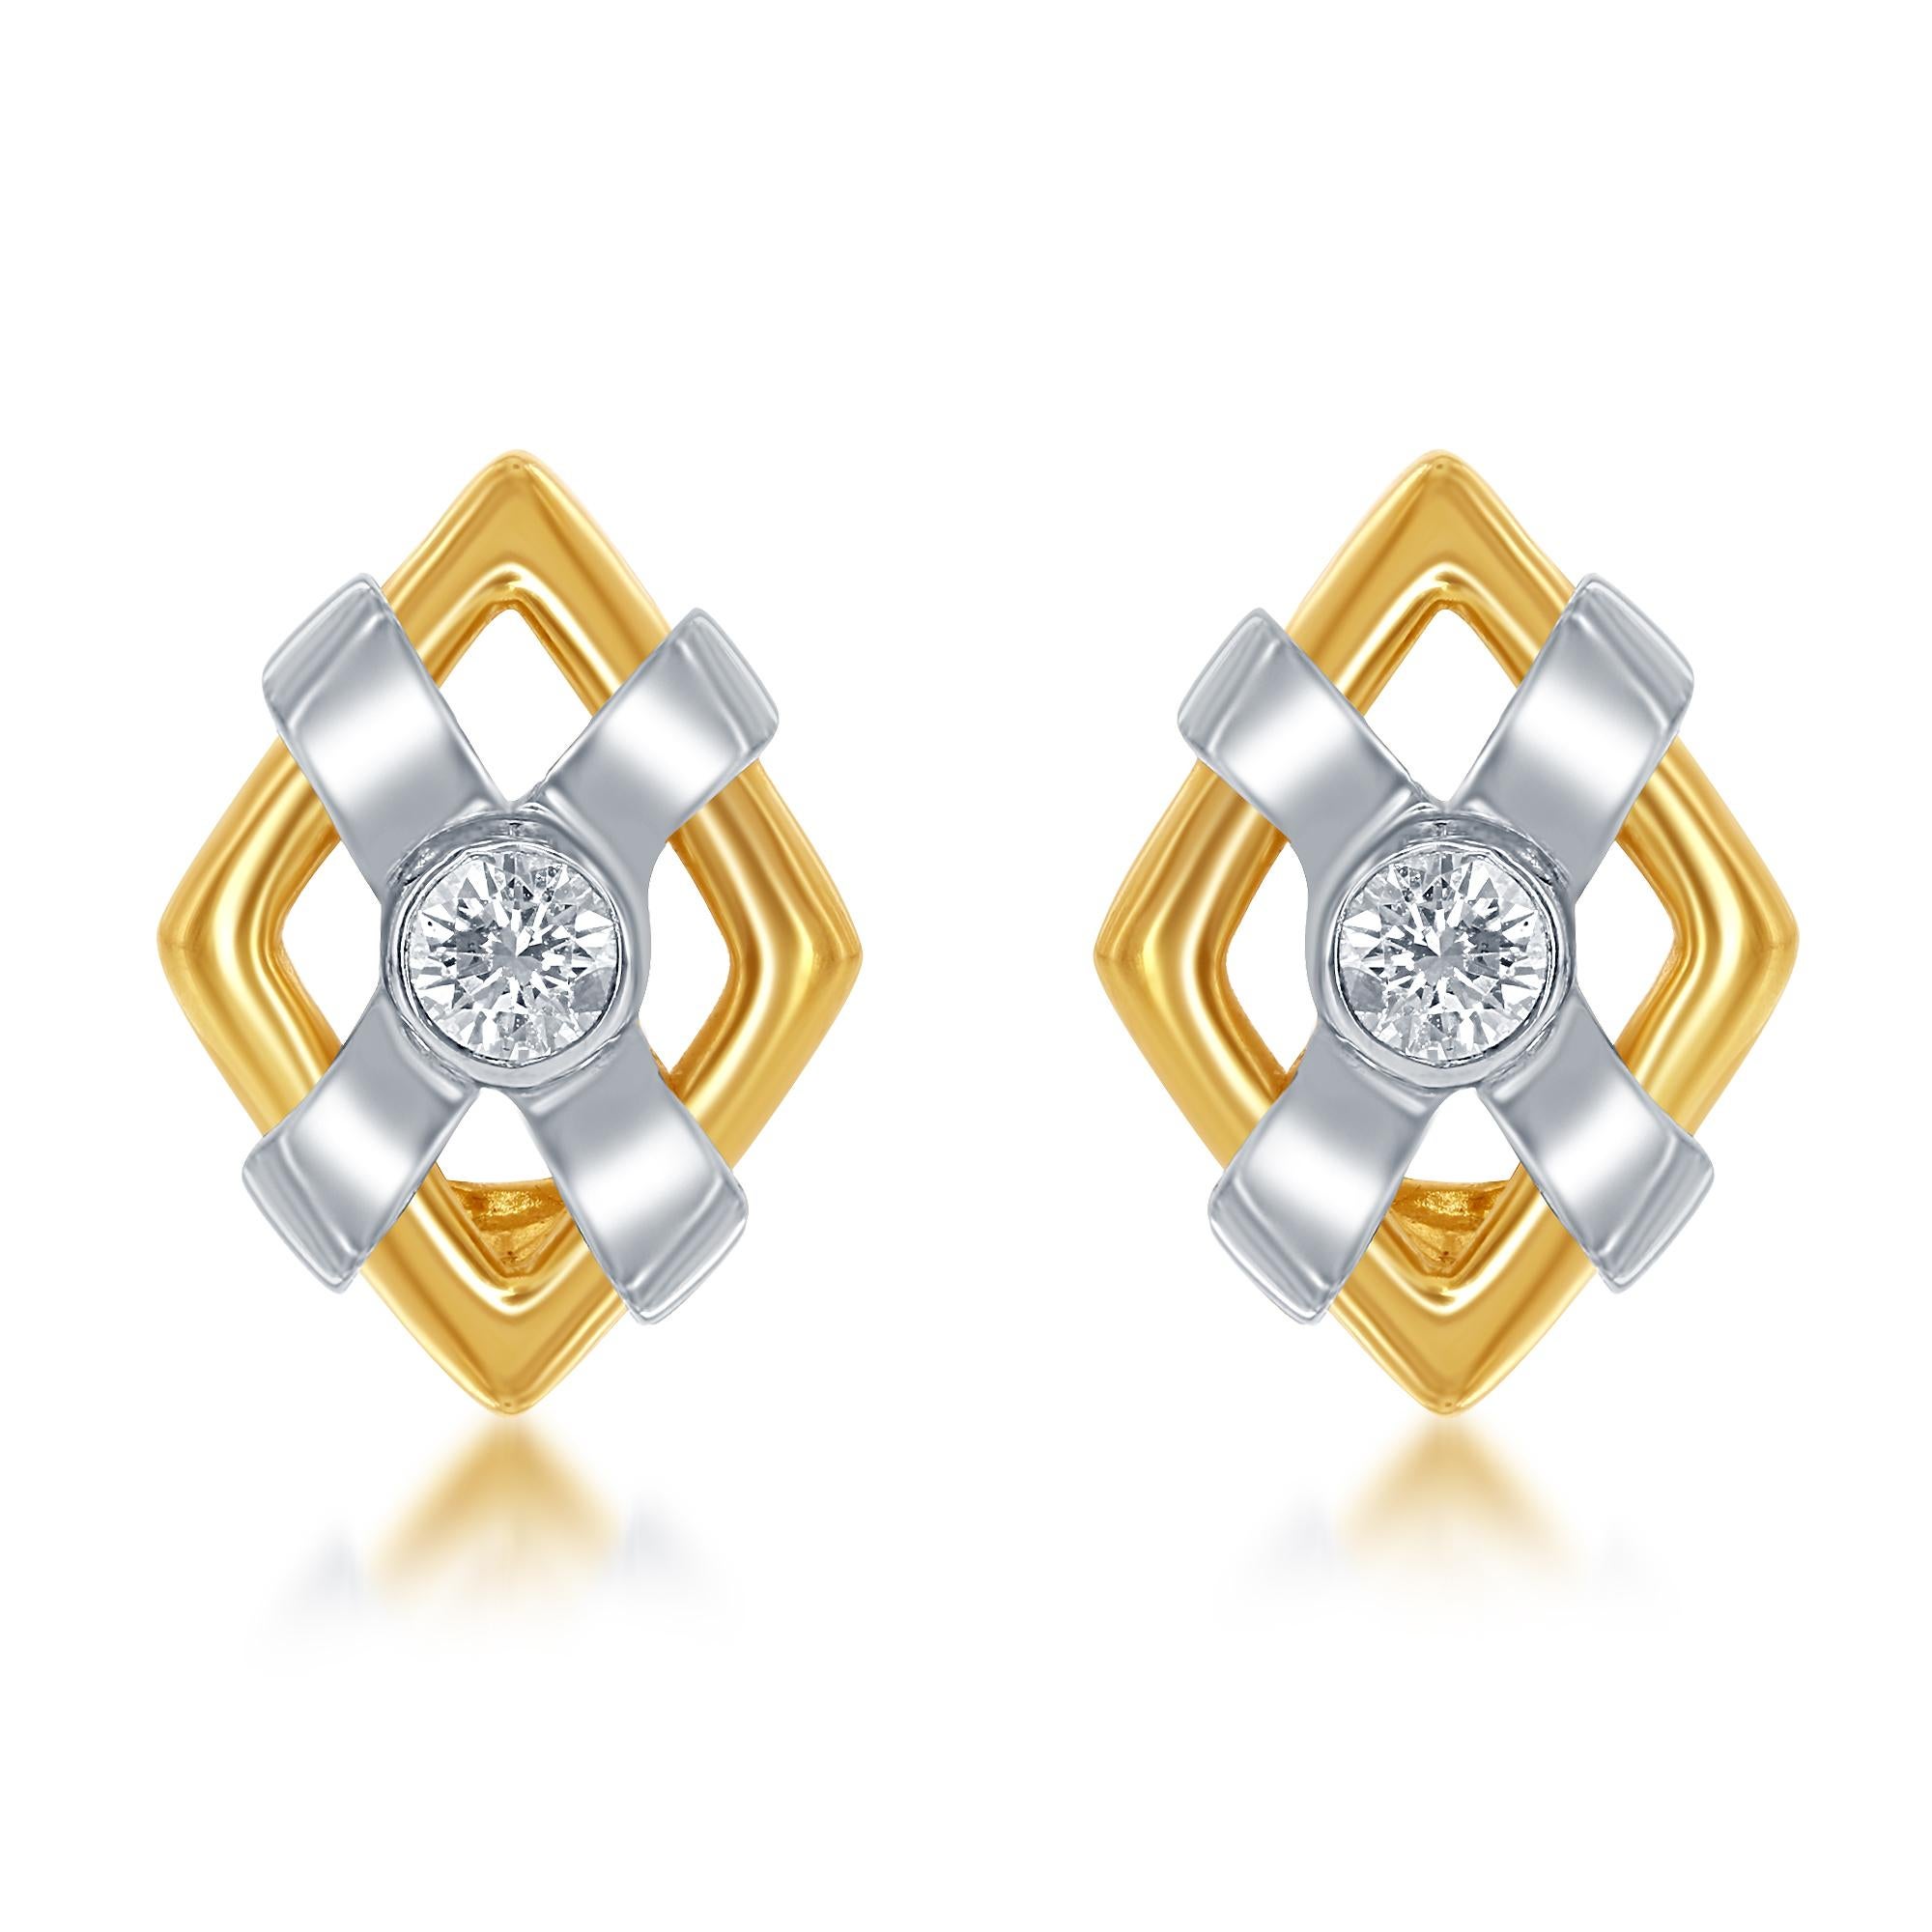 Diamantohrringe aus 14-karätigem Weiß- und Gelbgold mit 0,50 cts tw Diamanten.
Diana M. ist seit über 35 Jahren ein führender Anbieter von hochwertigem Schmuck.
Diana M ist eine zentrale Anlaufstelle für alle Ihre Schmuckeinkäufe und führt eine